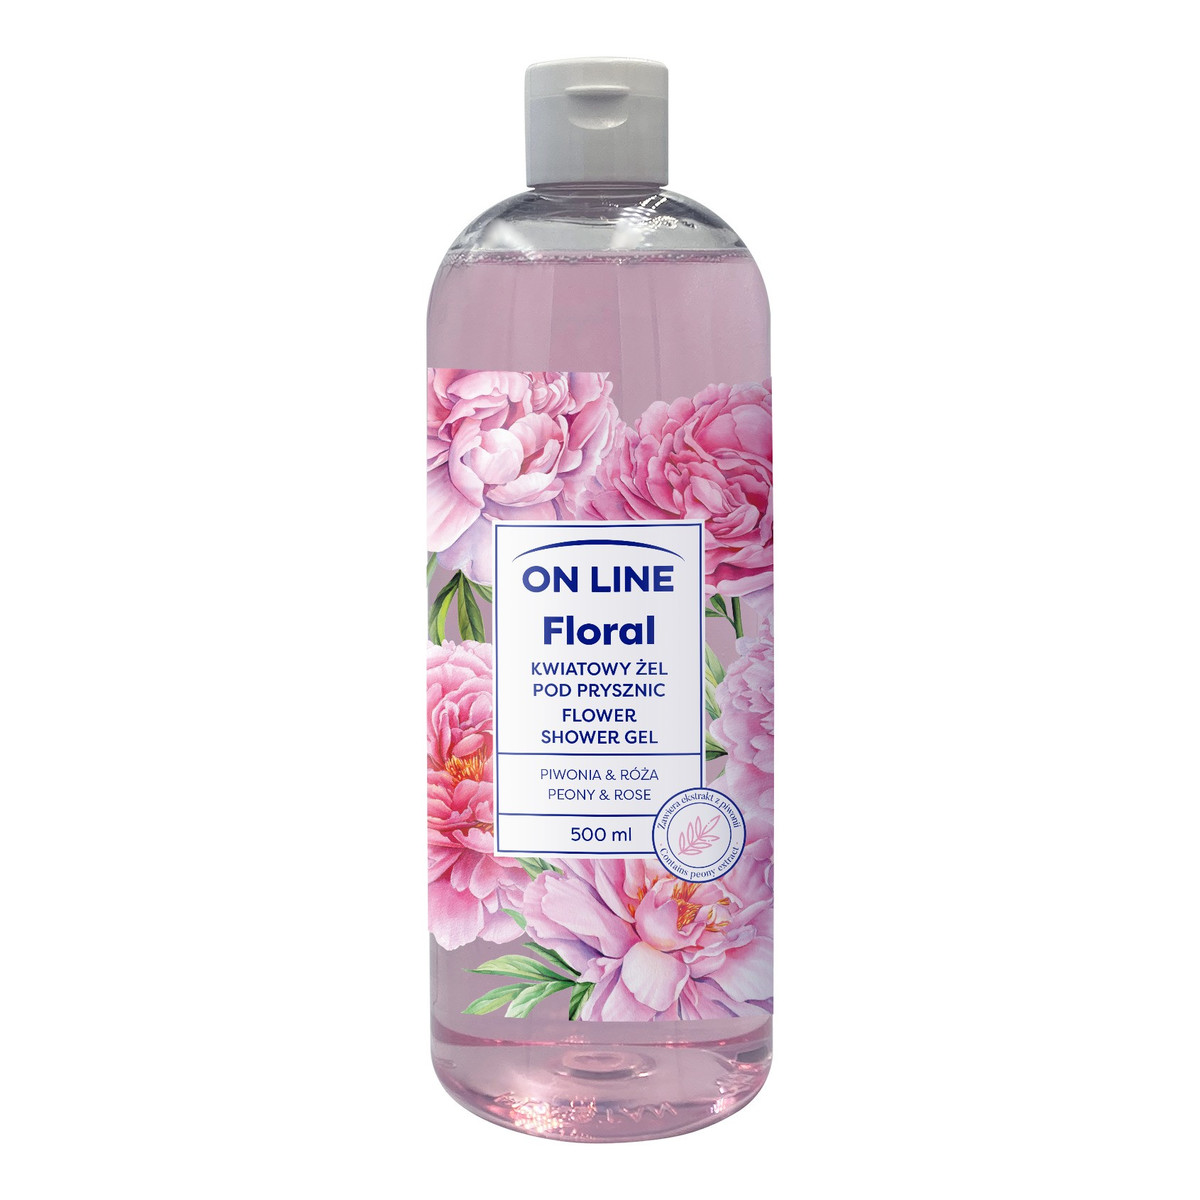 On Line Floral Kwiatowy żel pod prysznic - Piwonia & Róża 500ml